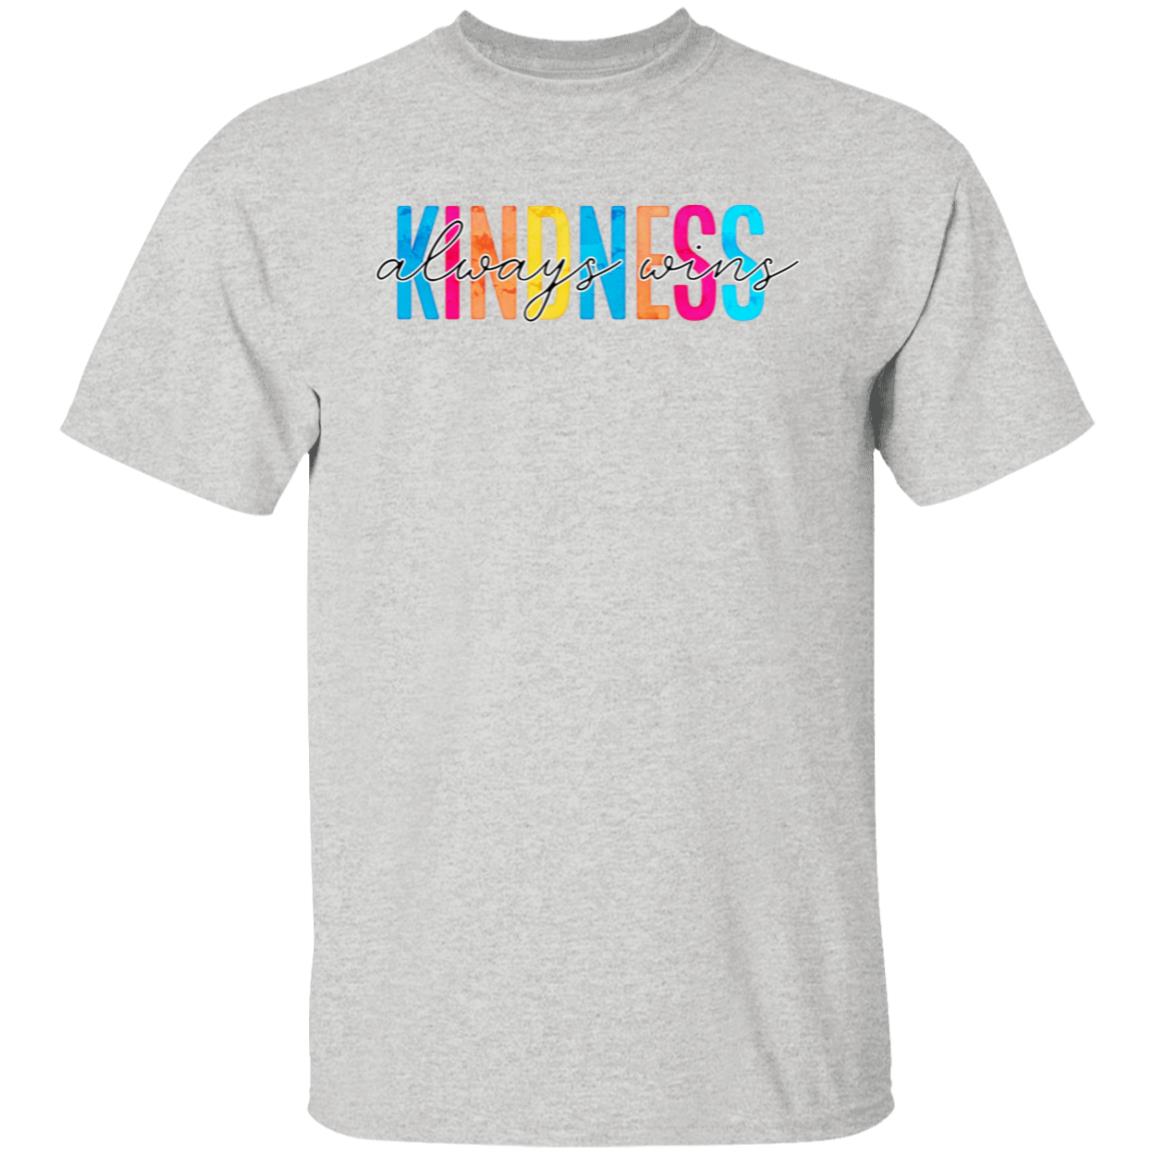 Kindness Always Wins 5.3 oz. T-Shirt